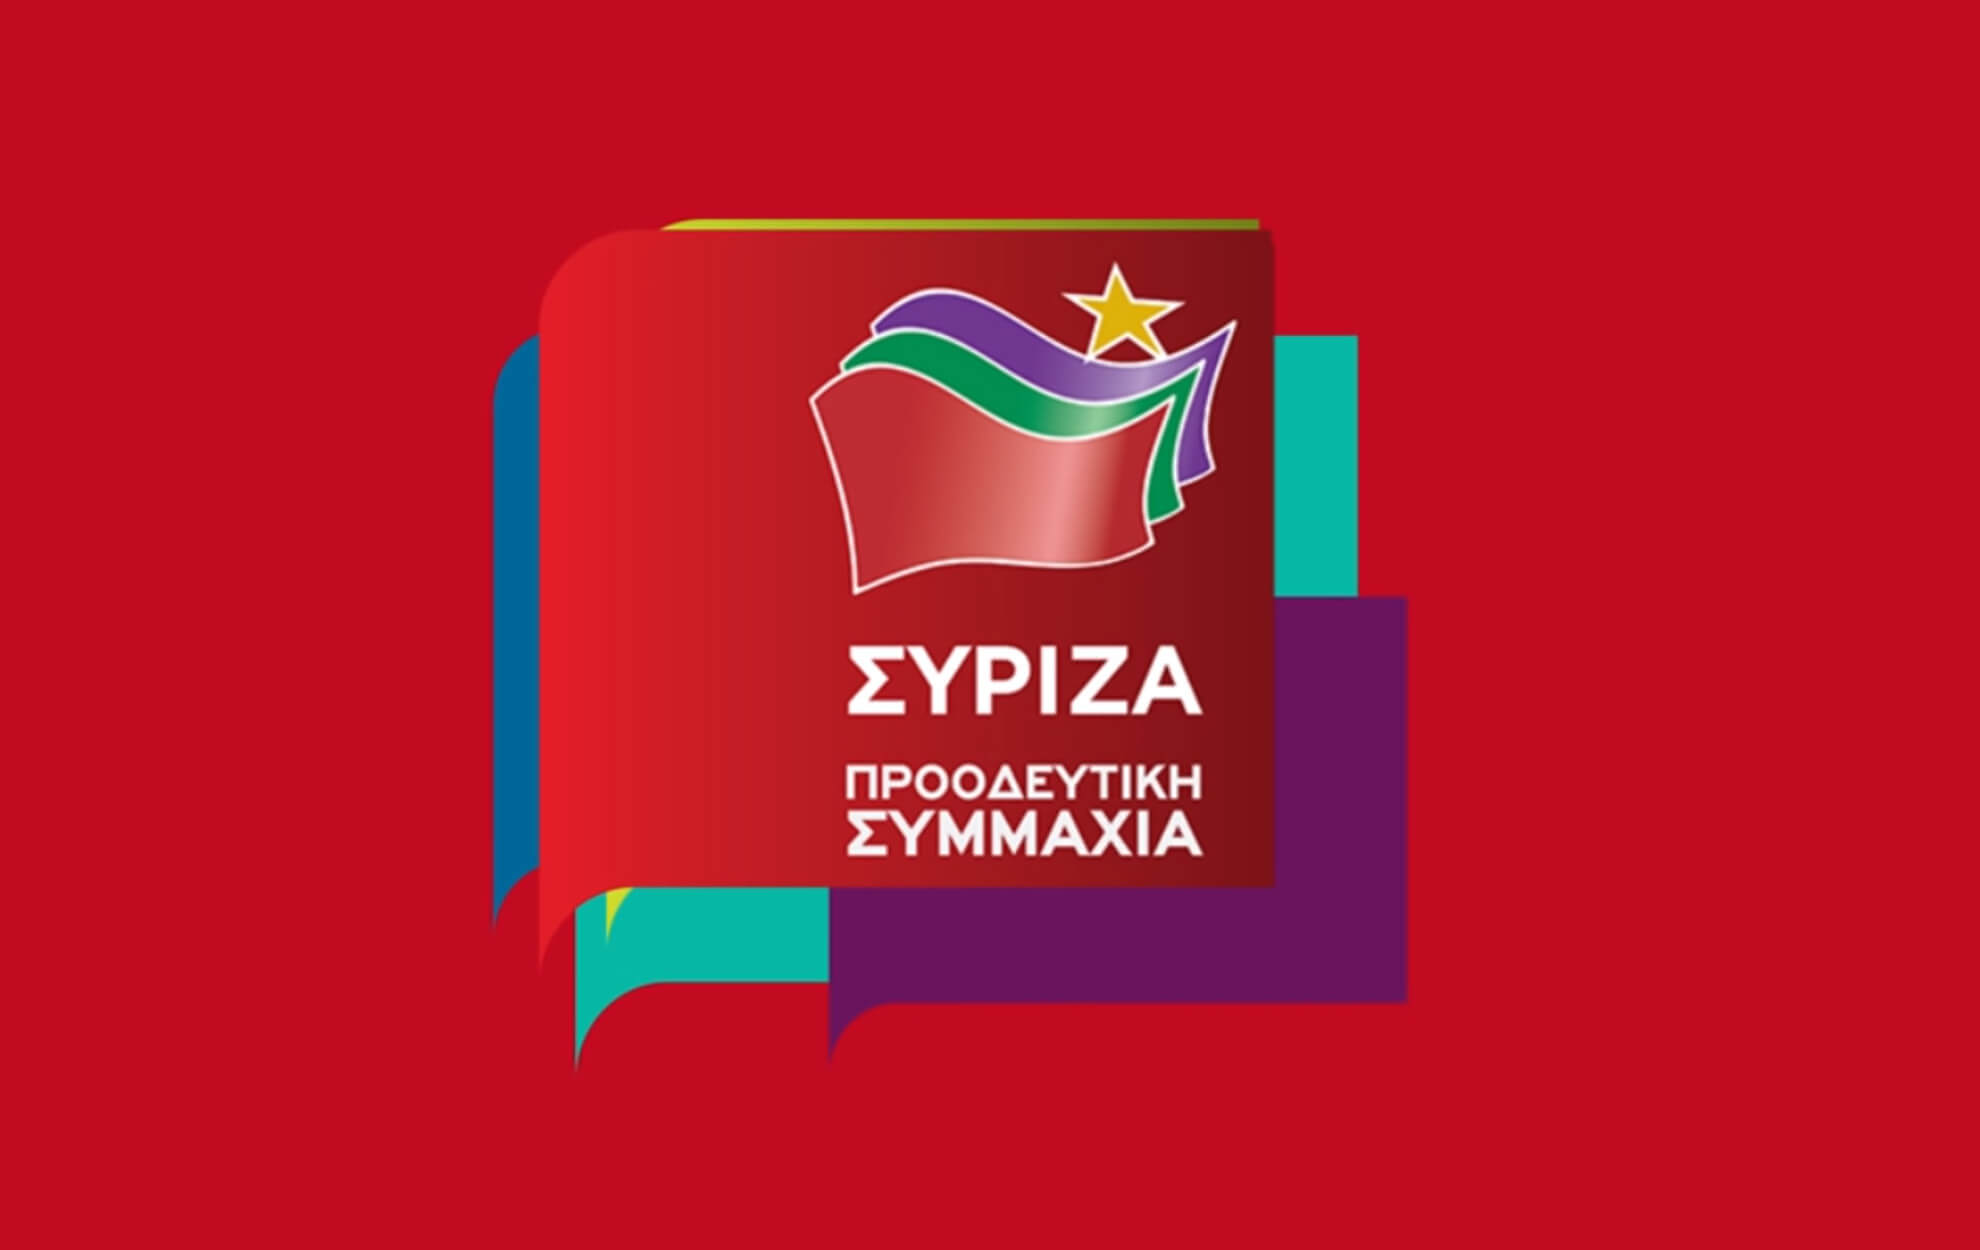 Δημοτικές εκλογές 2019: Μαζικό “άκυρο” στον ΣΥΡΙΖΑ από υποψηφίους που… πήραν τη στήριξή του